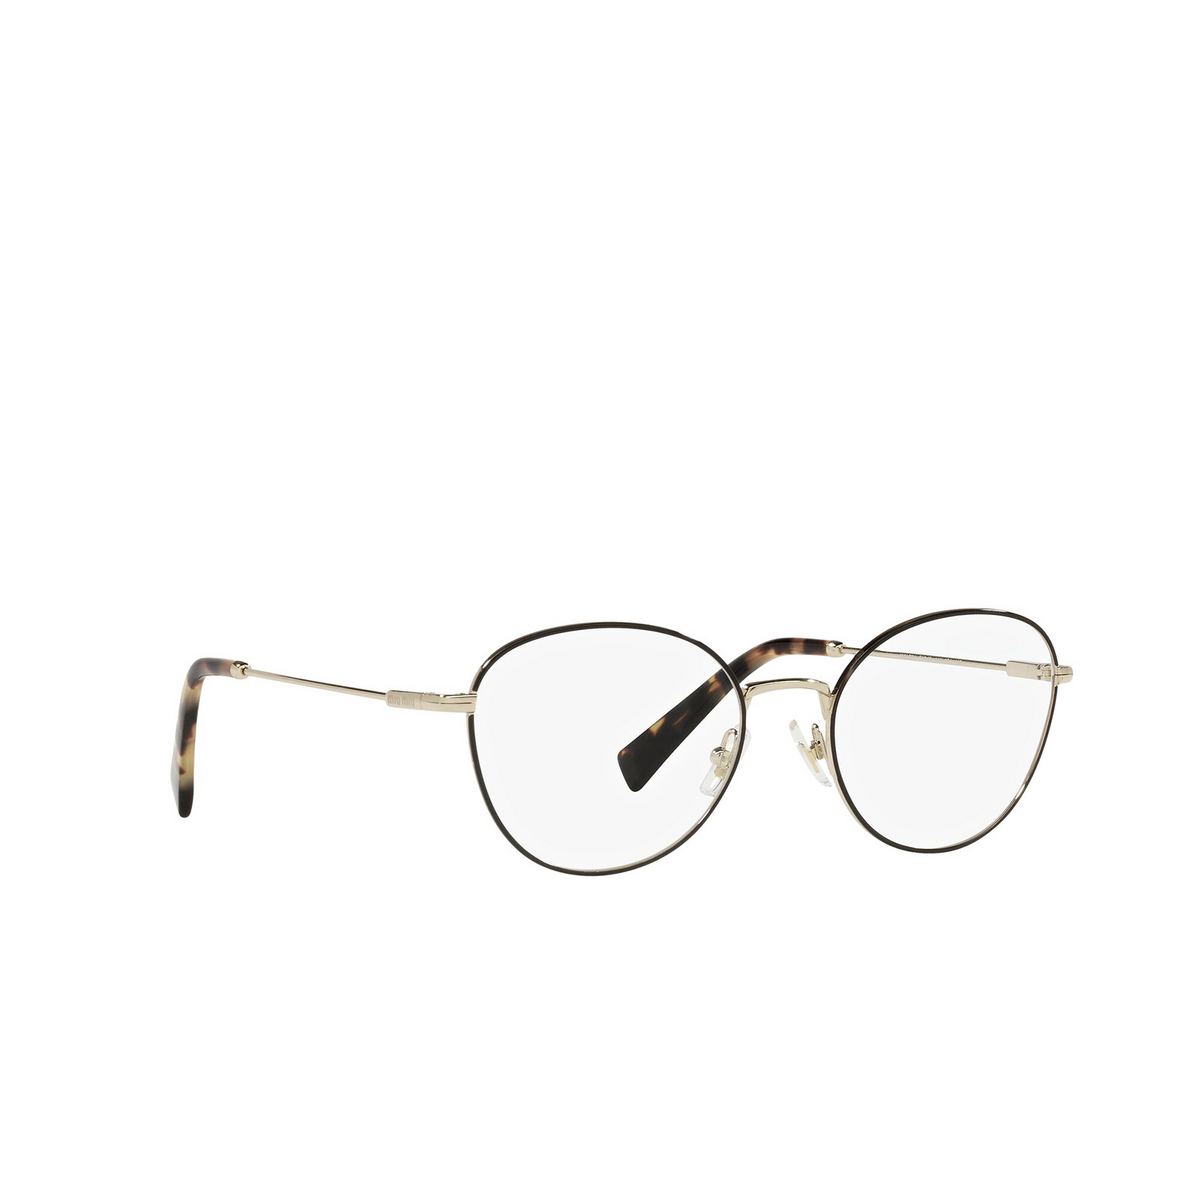 Miu Miu® Cat-eye Eyeglasses: MU 50UV color Black AAV1O1 - three-quarters view.